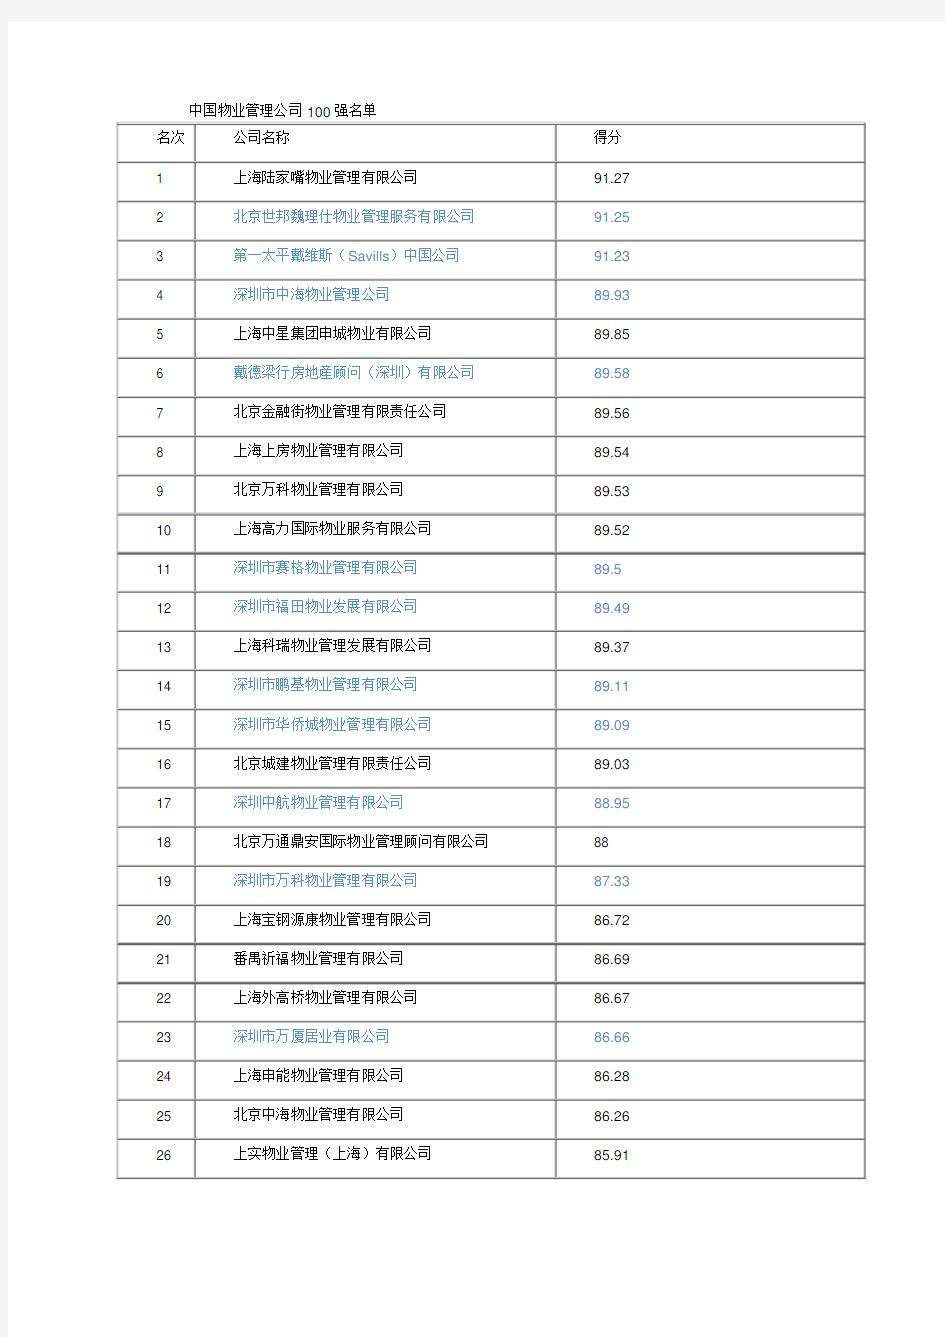 中国物业管理公司100强名单